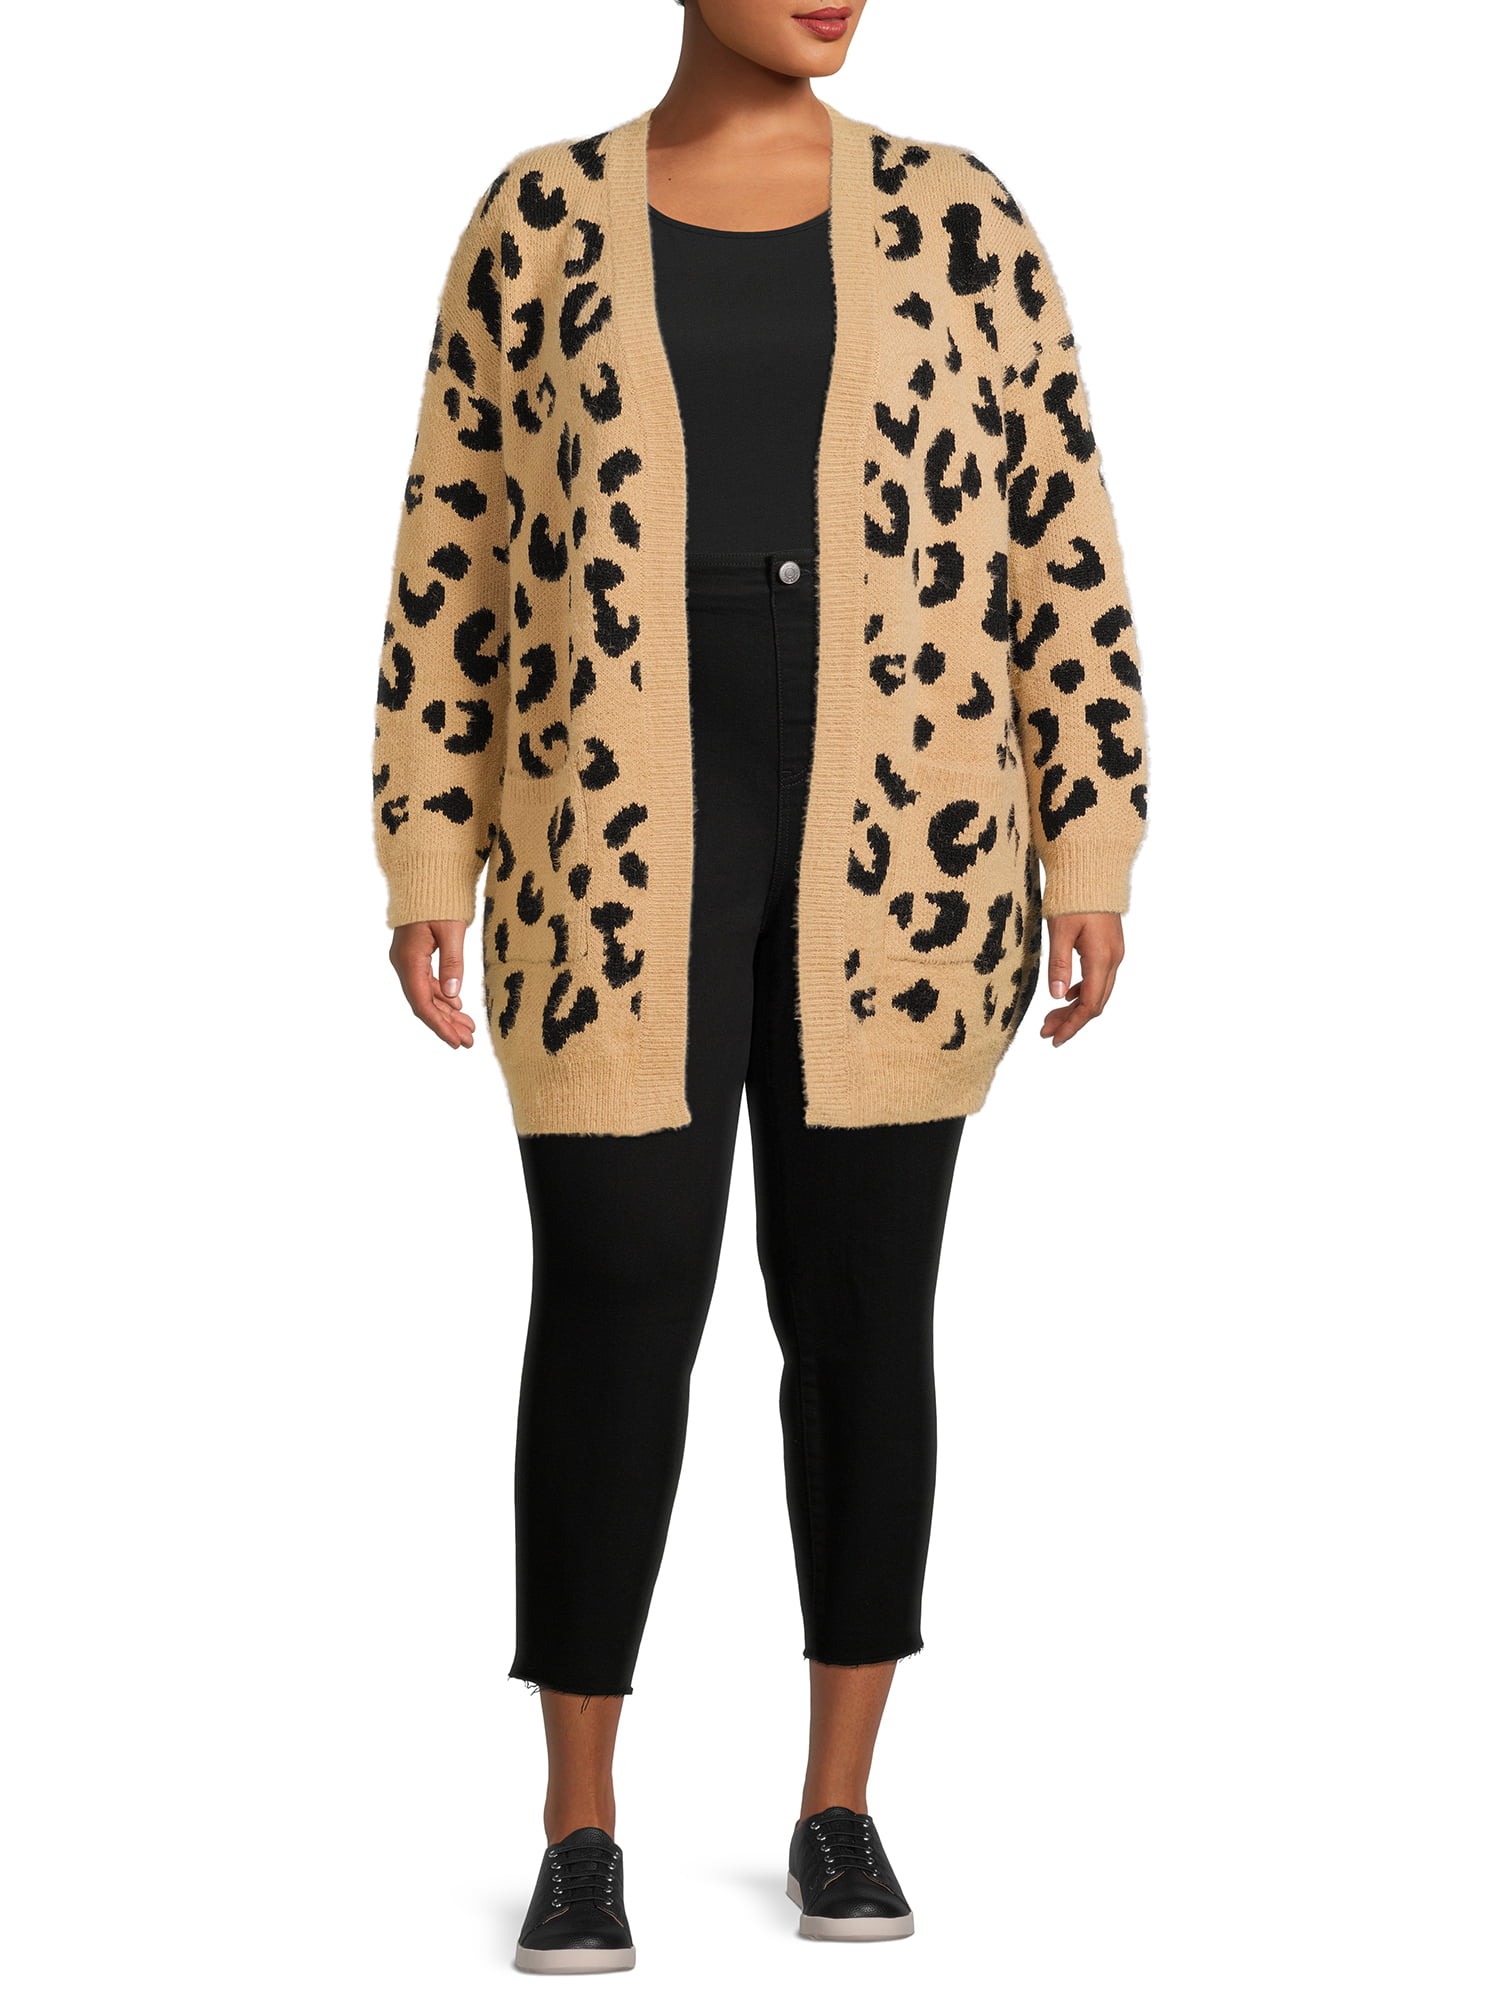 Dreamers by Women's Plus Size Leopard Print - Walmart.com